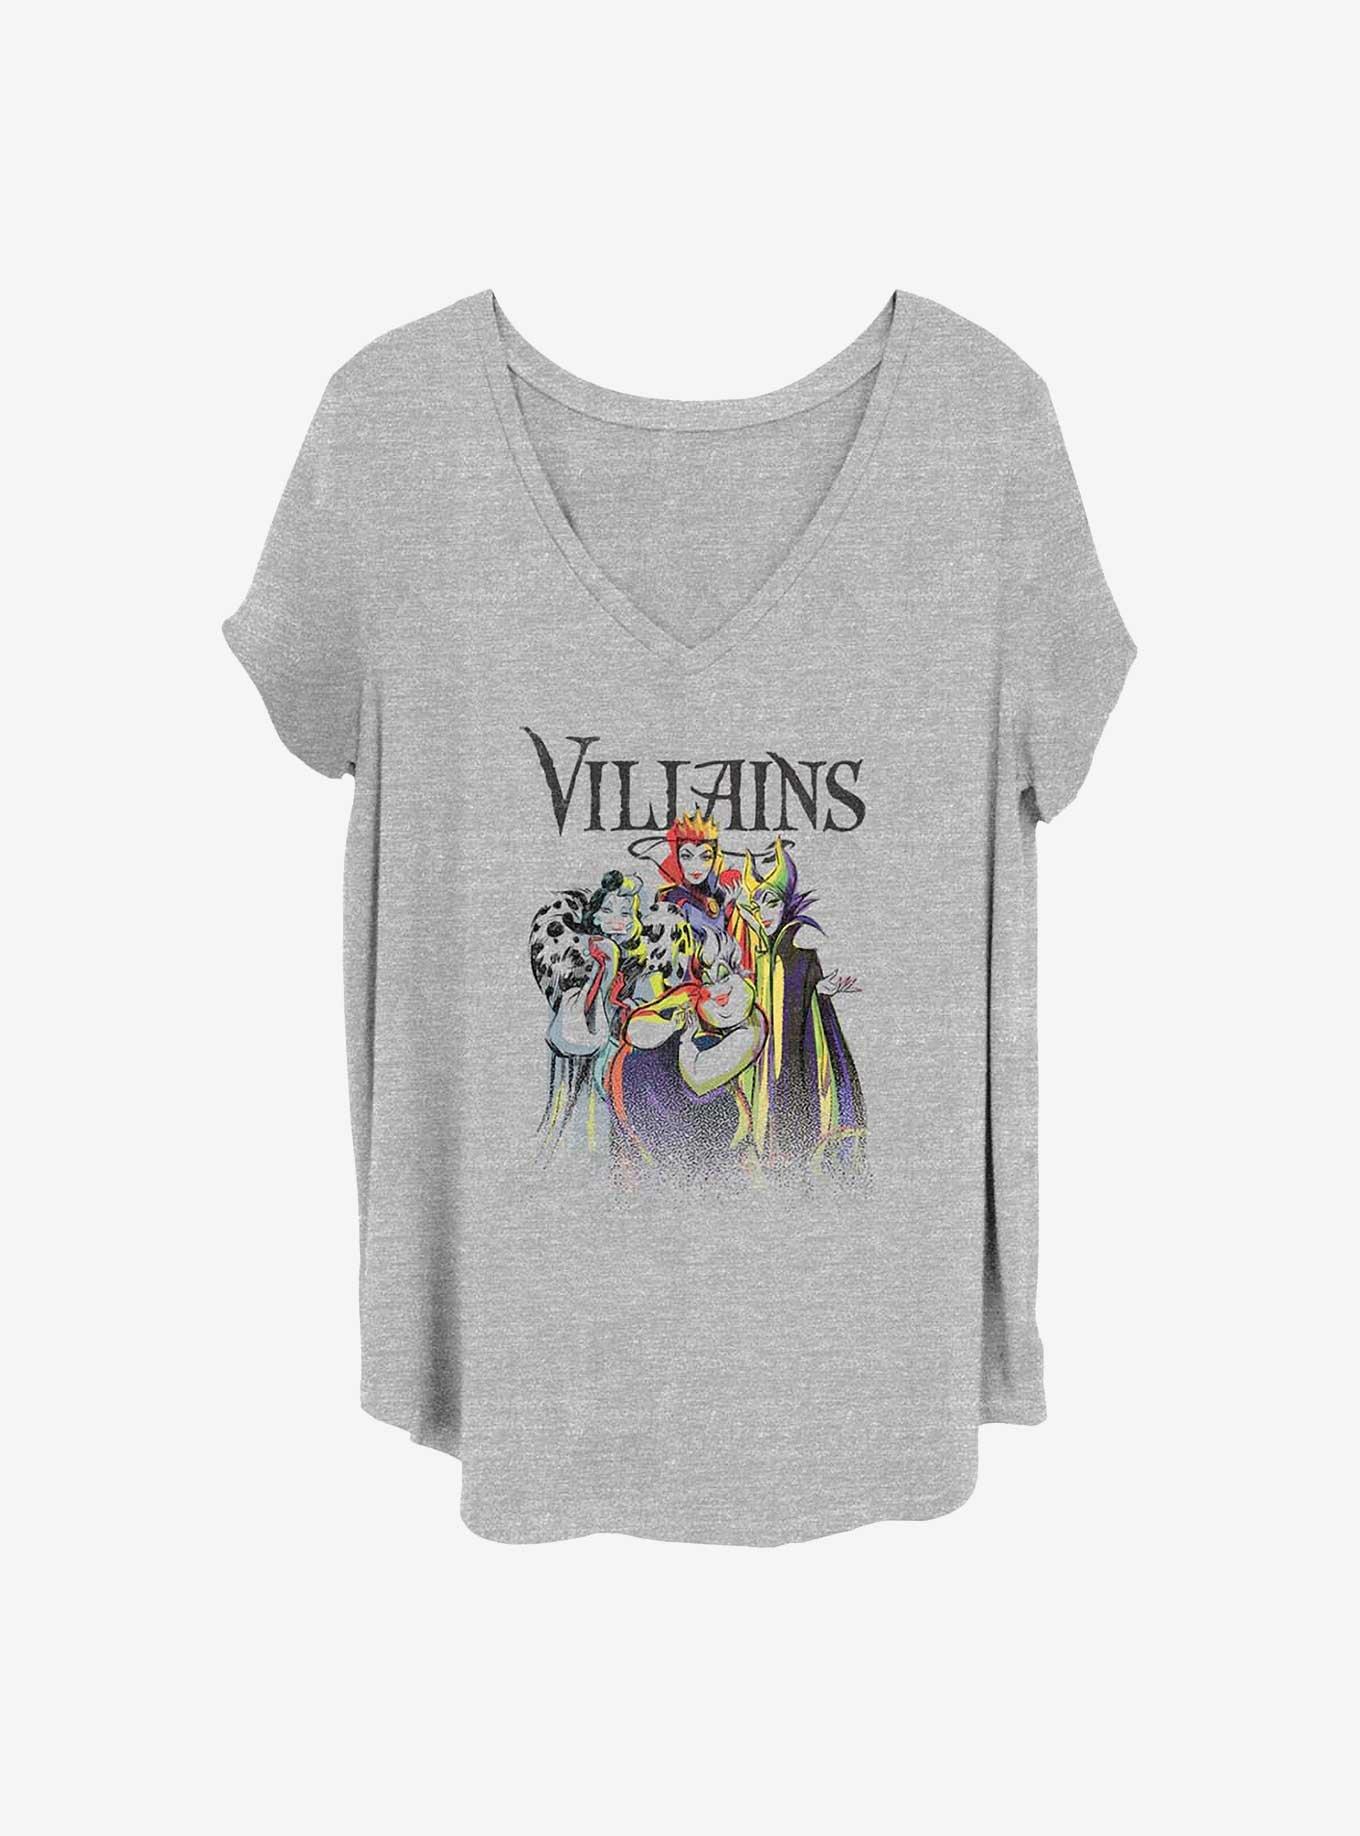 Disney Villains Villain Crew Girls T-Shirt Plus